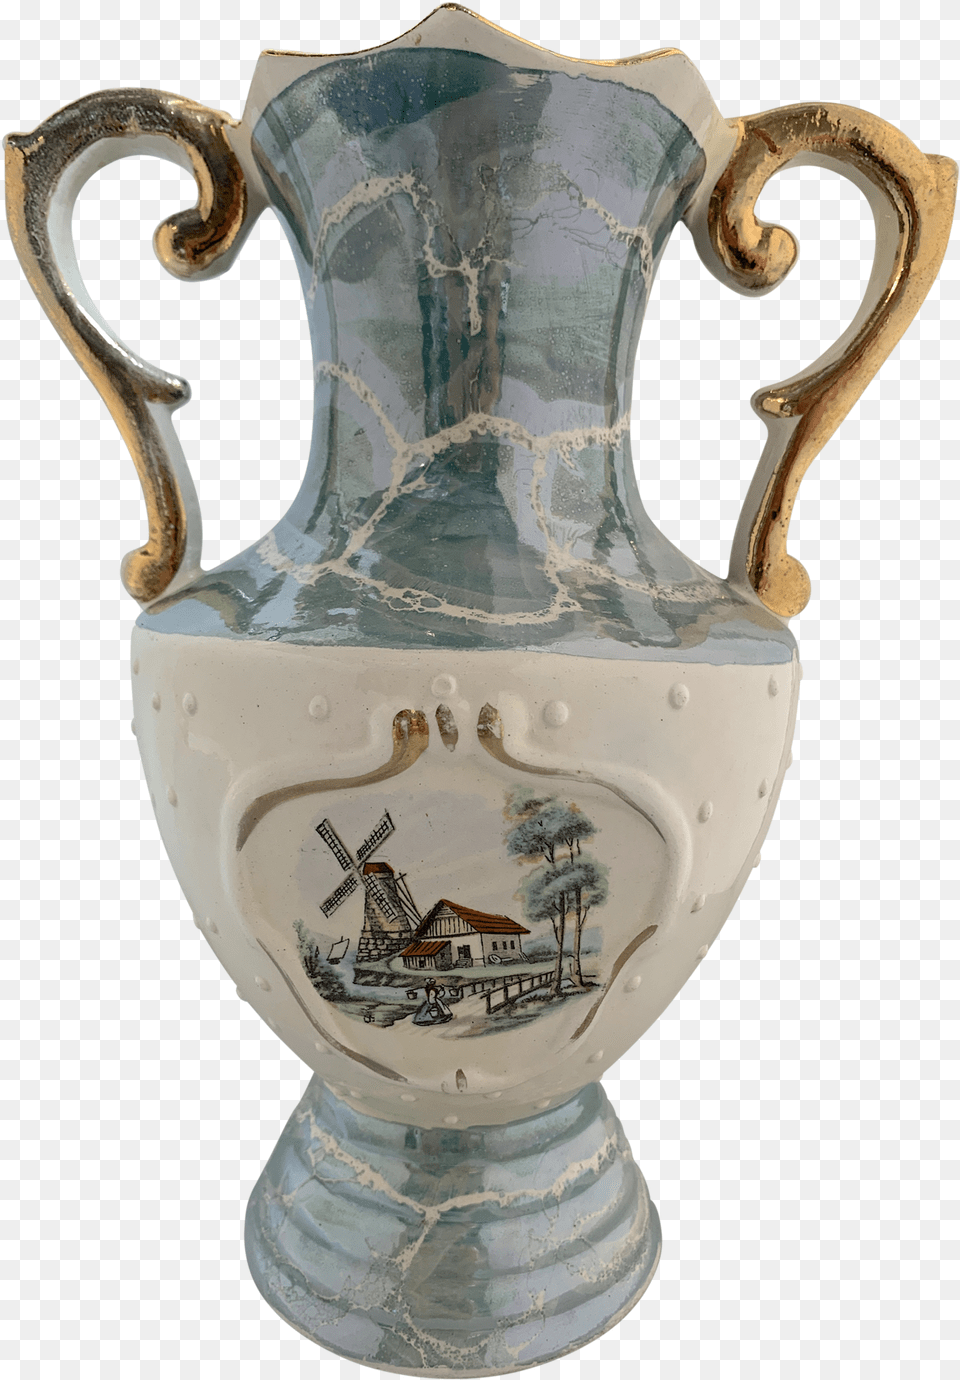 Ceramic, Jar, Pottery, Vase, Urn Png Image